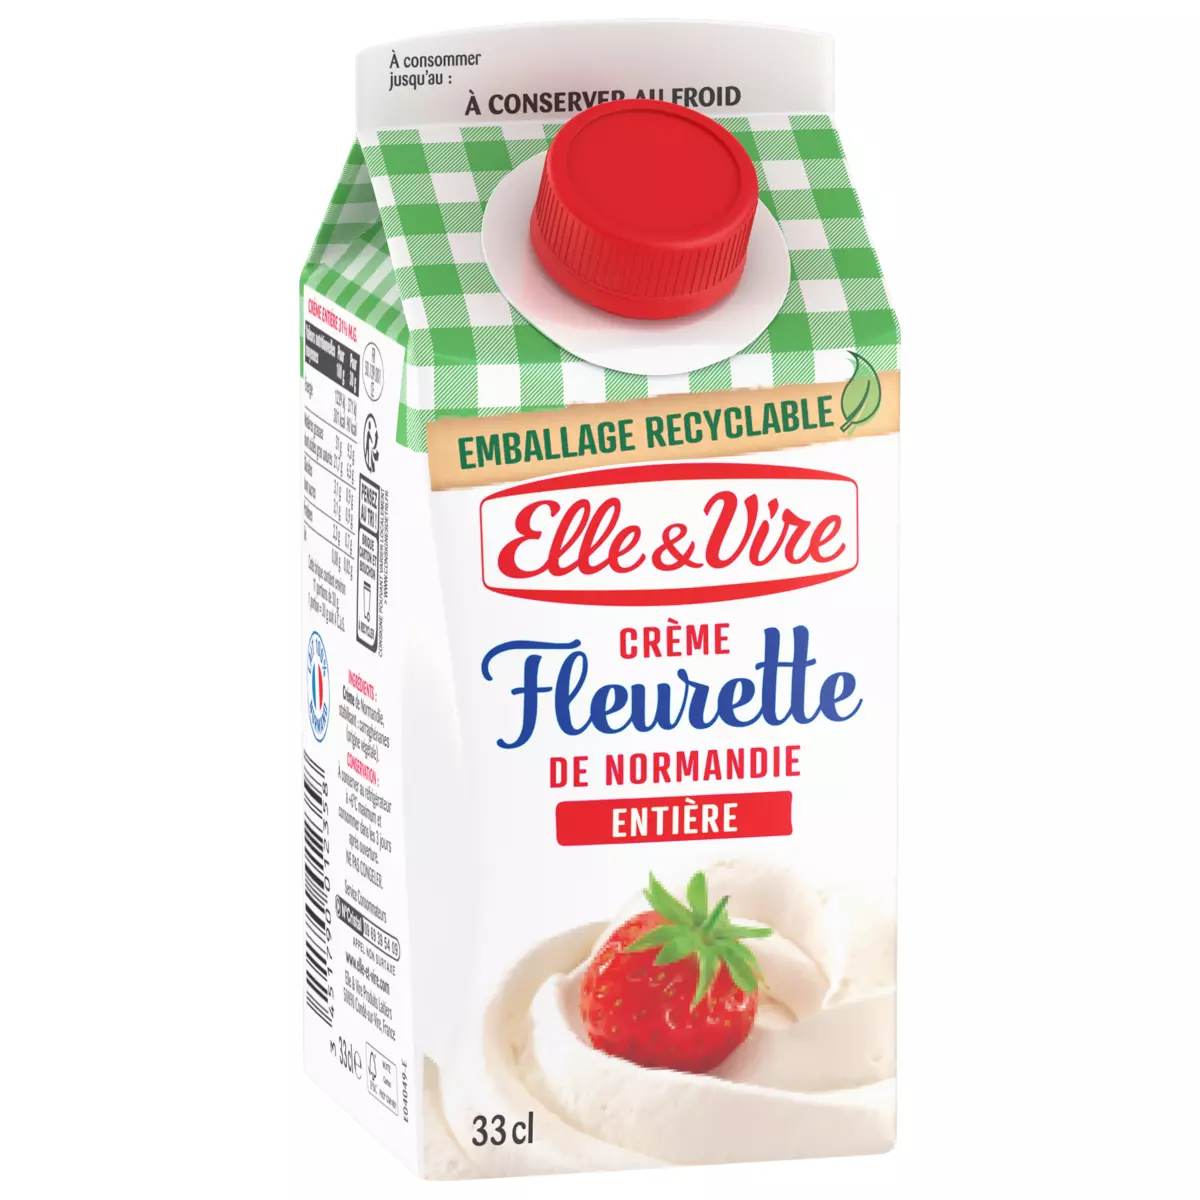 Elle & Vire Creme Fleurette Single Cream 33cl